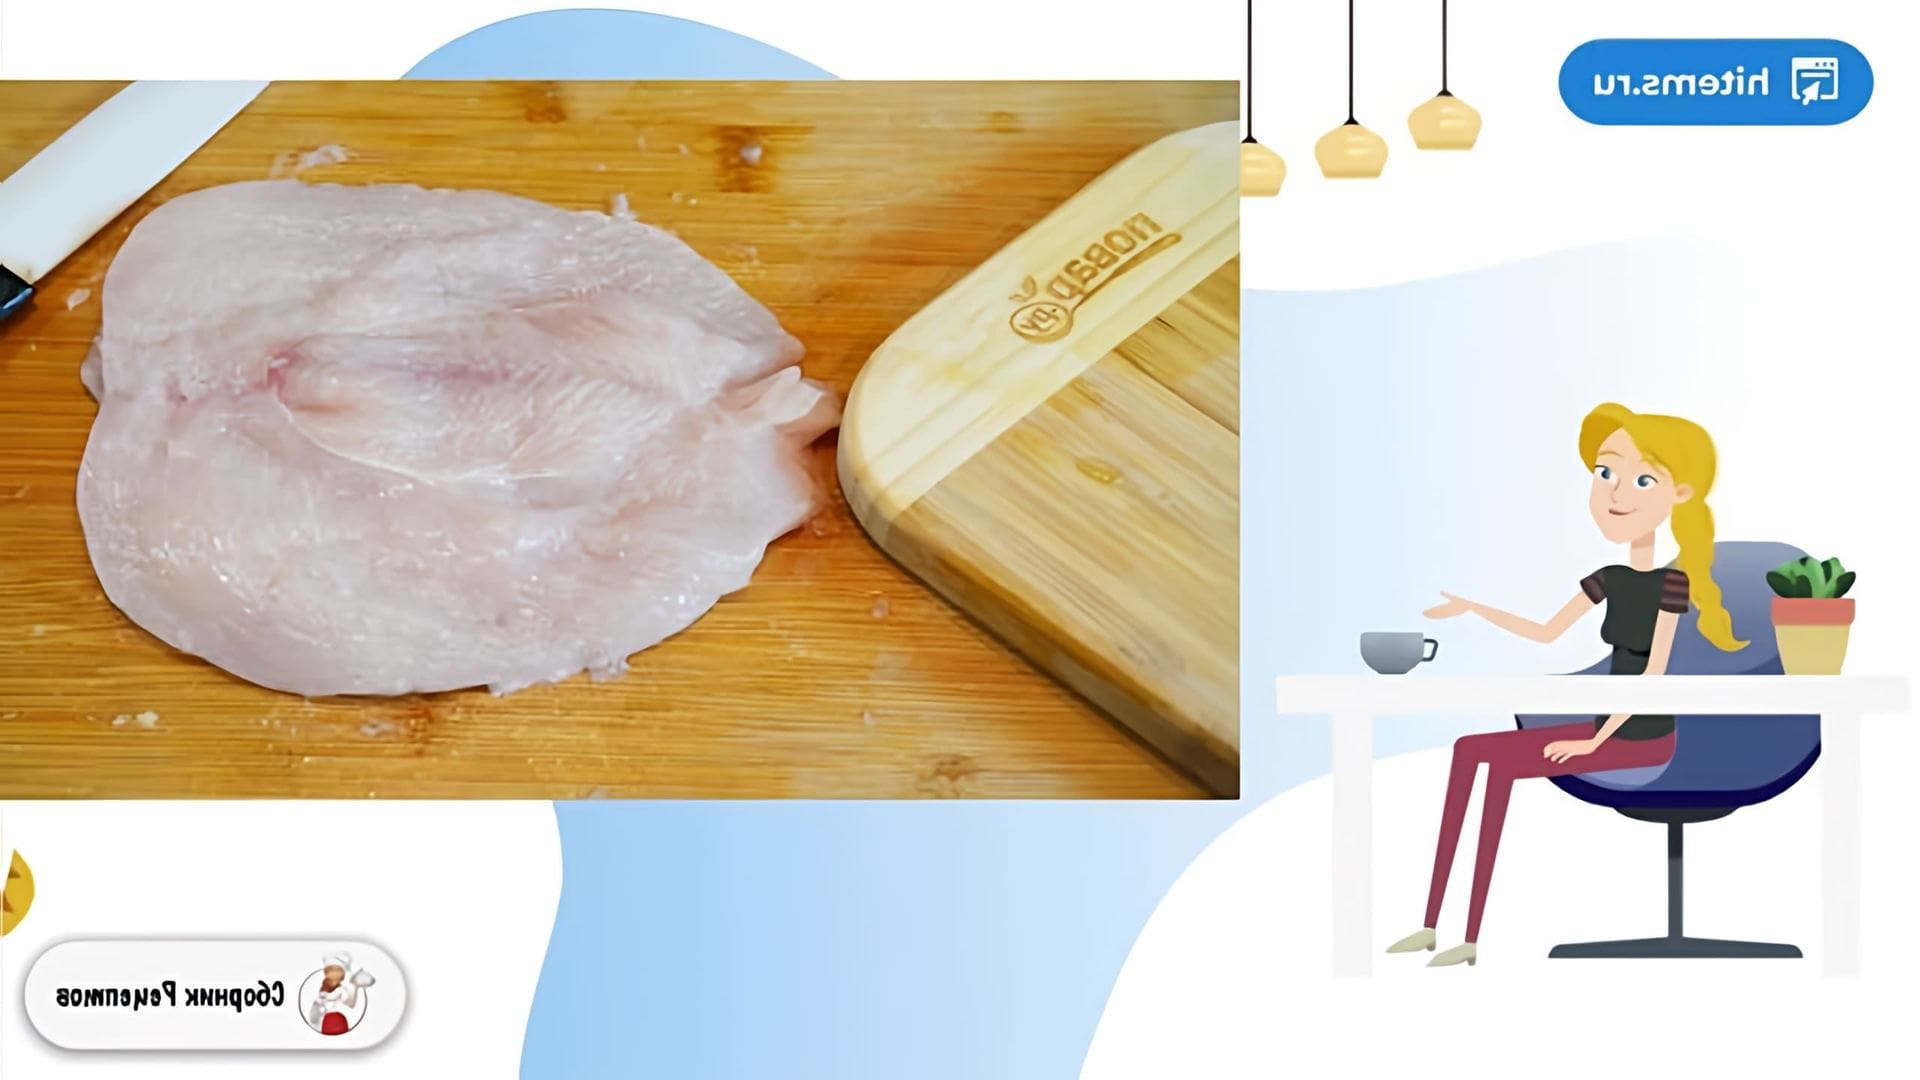 В этом видео демонстрируется рецепт приготовления куриной грудки с травами в духовке